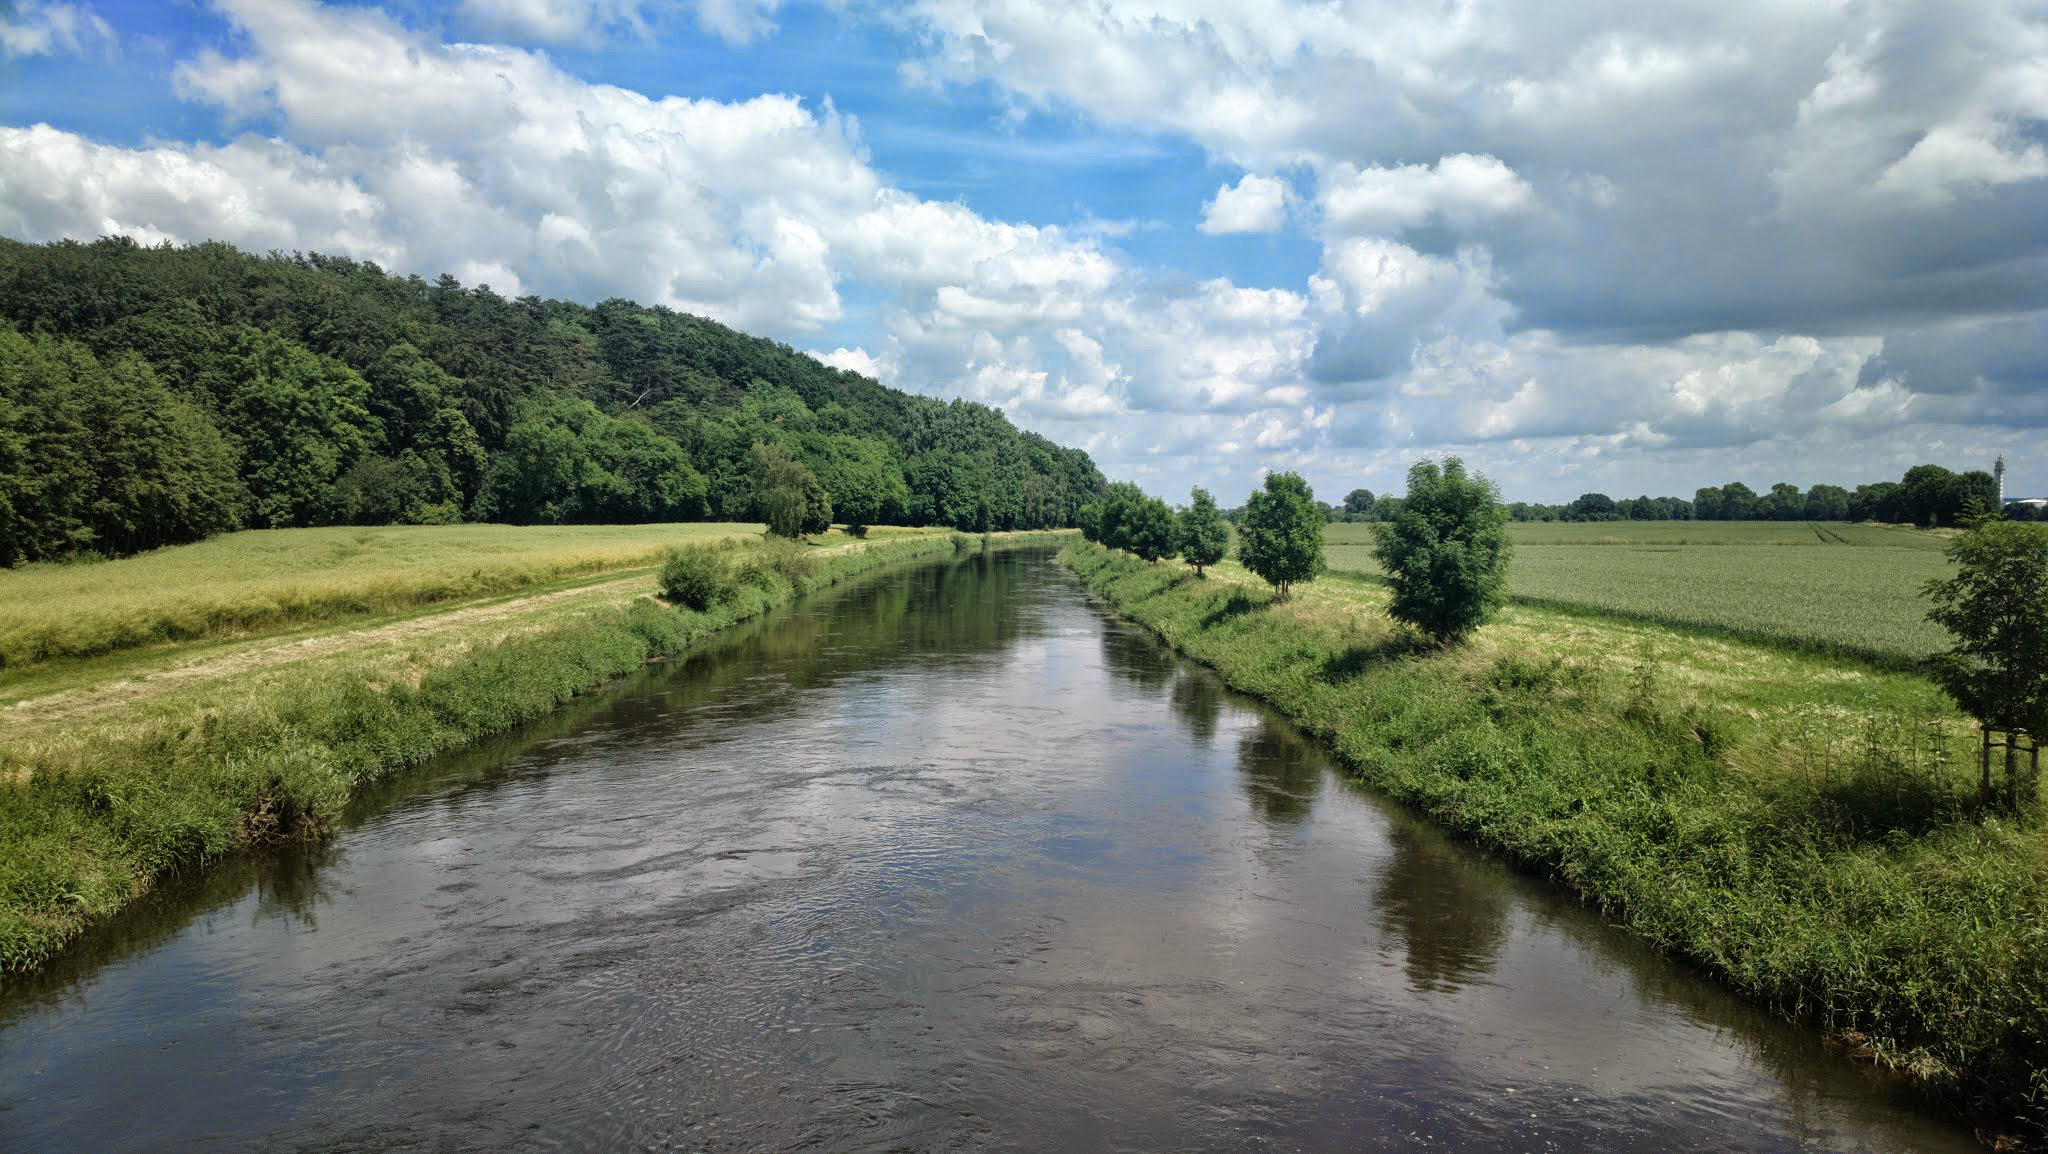 Farbfoto: Der Fluss die Leine zwischen dem Bahnhof Nordstemmen und dem Marienberg mit der Marienburg am Sonntag, dem 15. Juni im Jahre 2014. Fotograf: Kim Hartley.